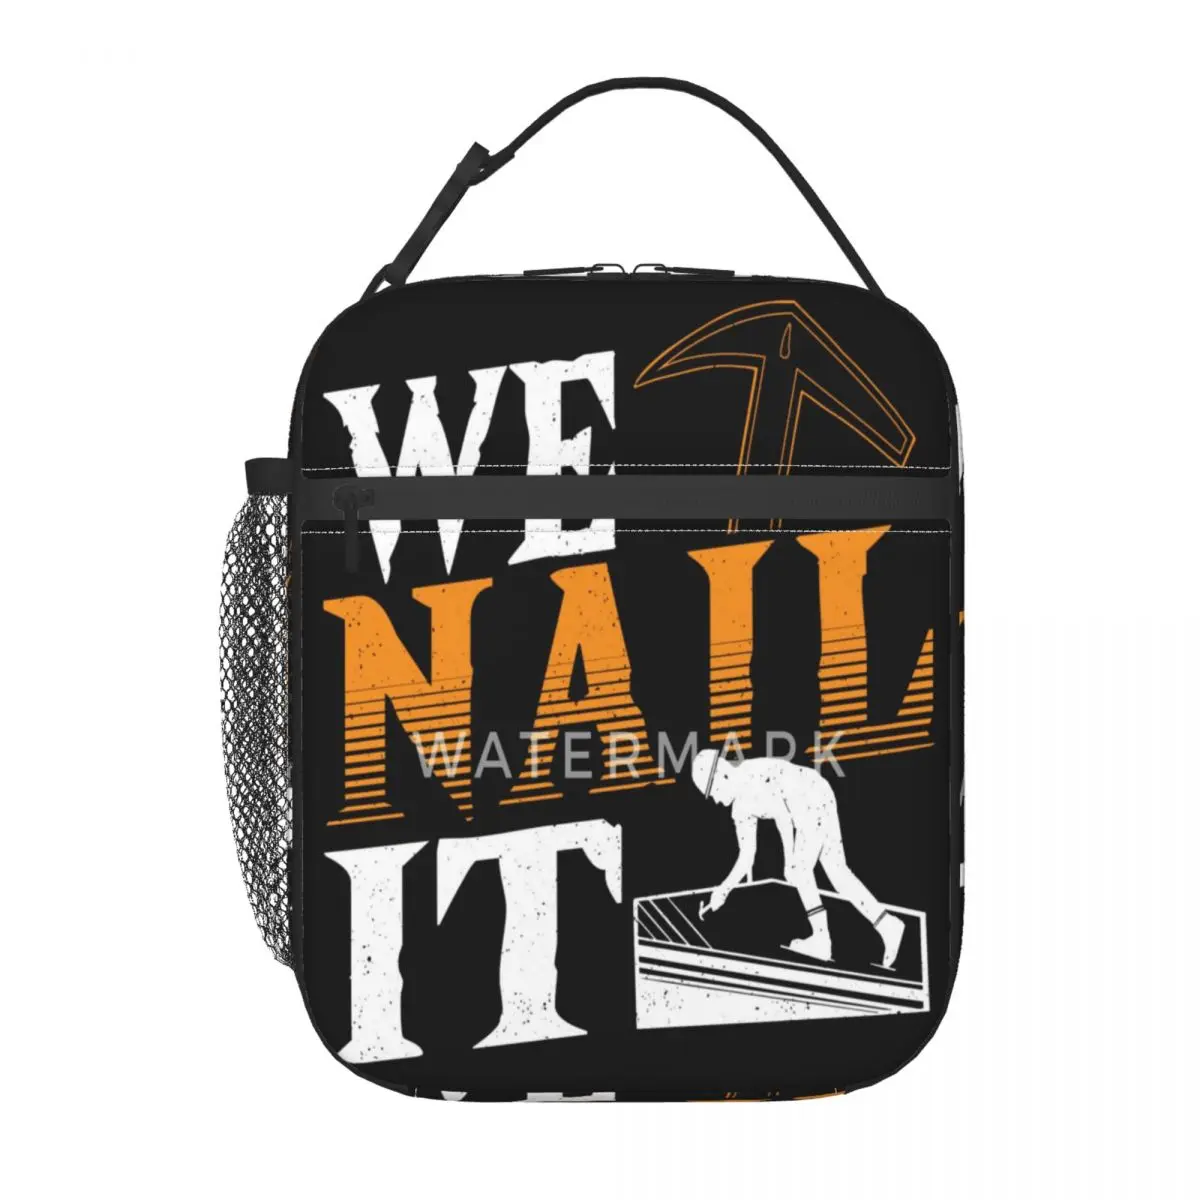 

Изолированная сумка для ланча We Nail It Roofer Craftsman, популярная в строительстве сумка для путешествий, подарок на день рождения, несколько стилей